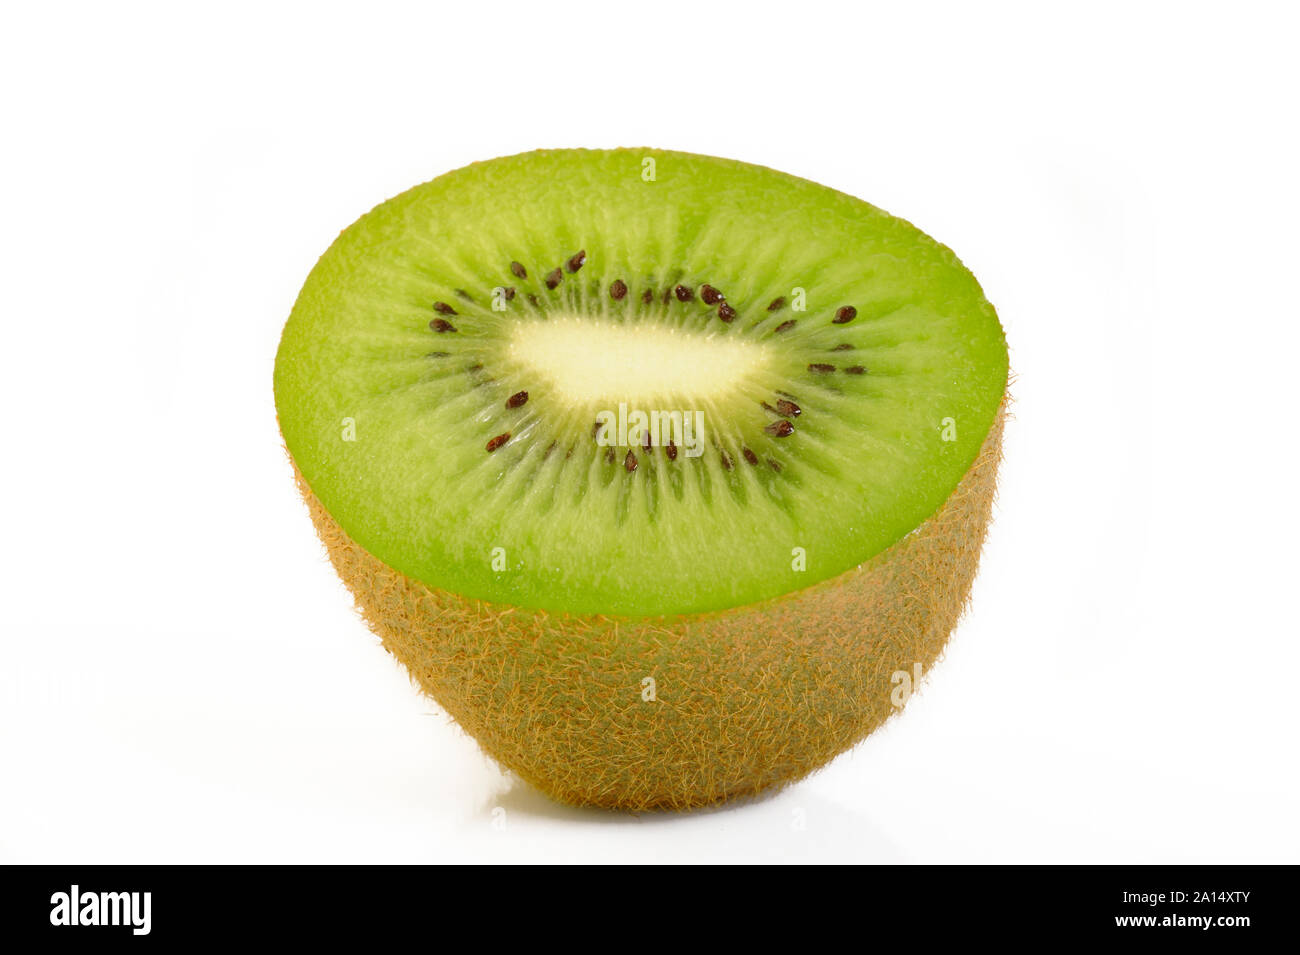 ripe kiwi fruit isolated on white background Stock Photo